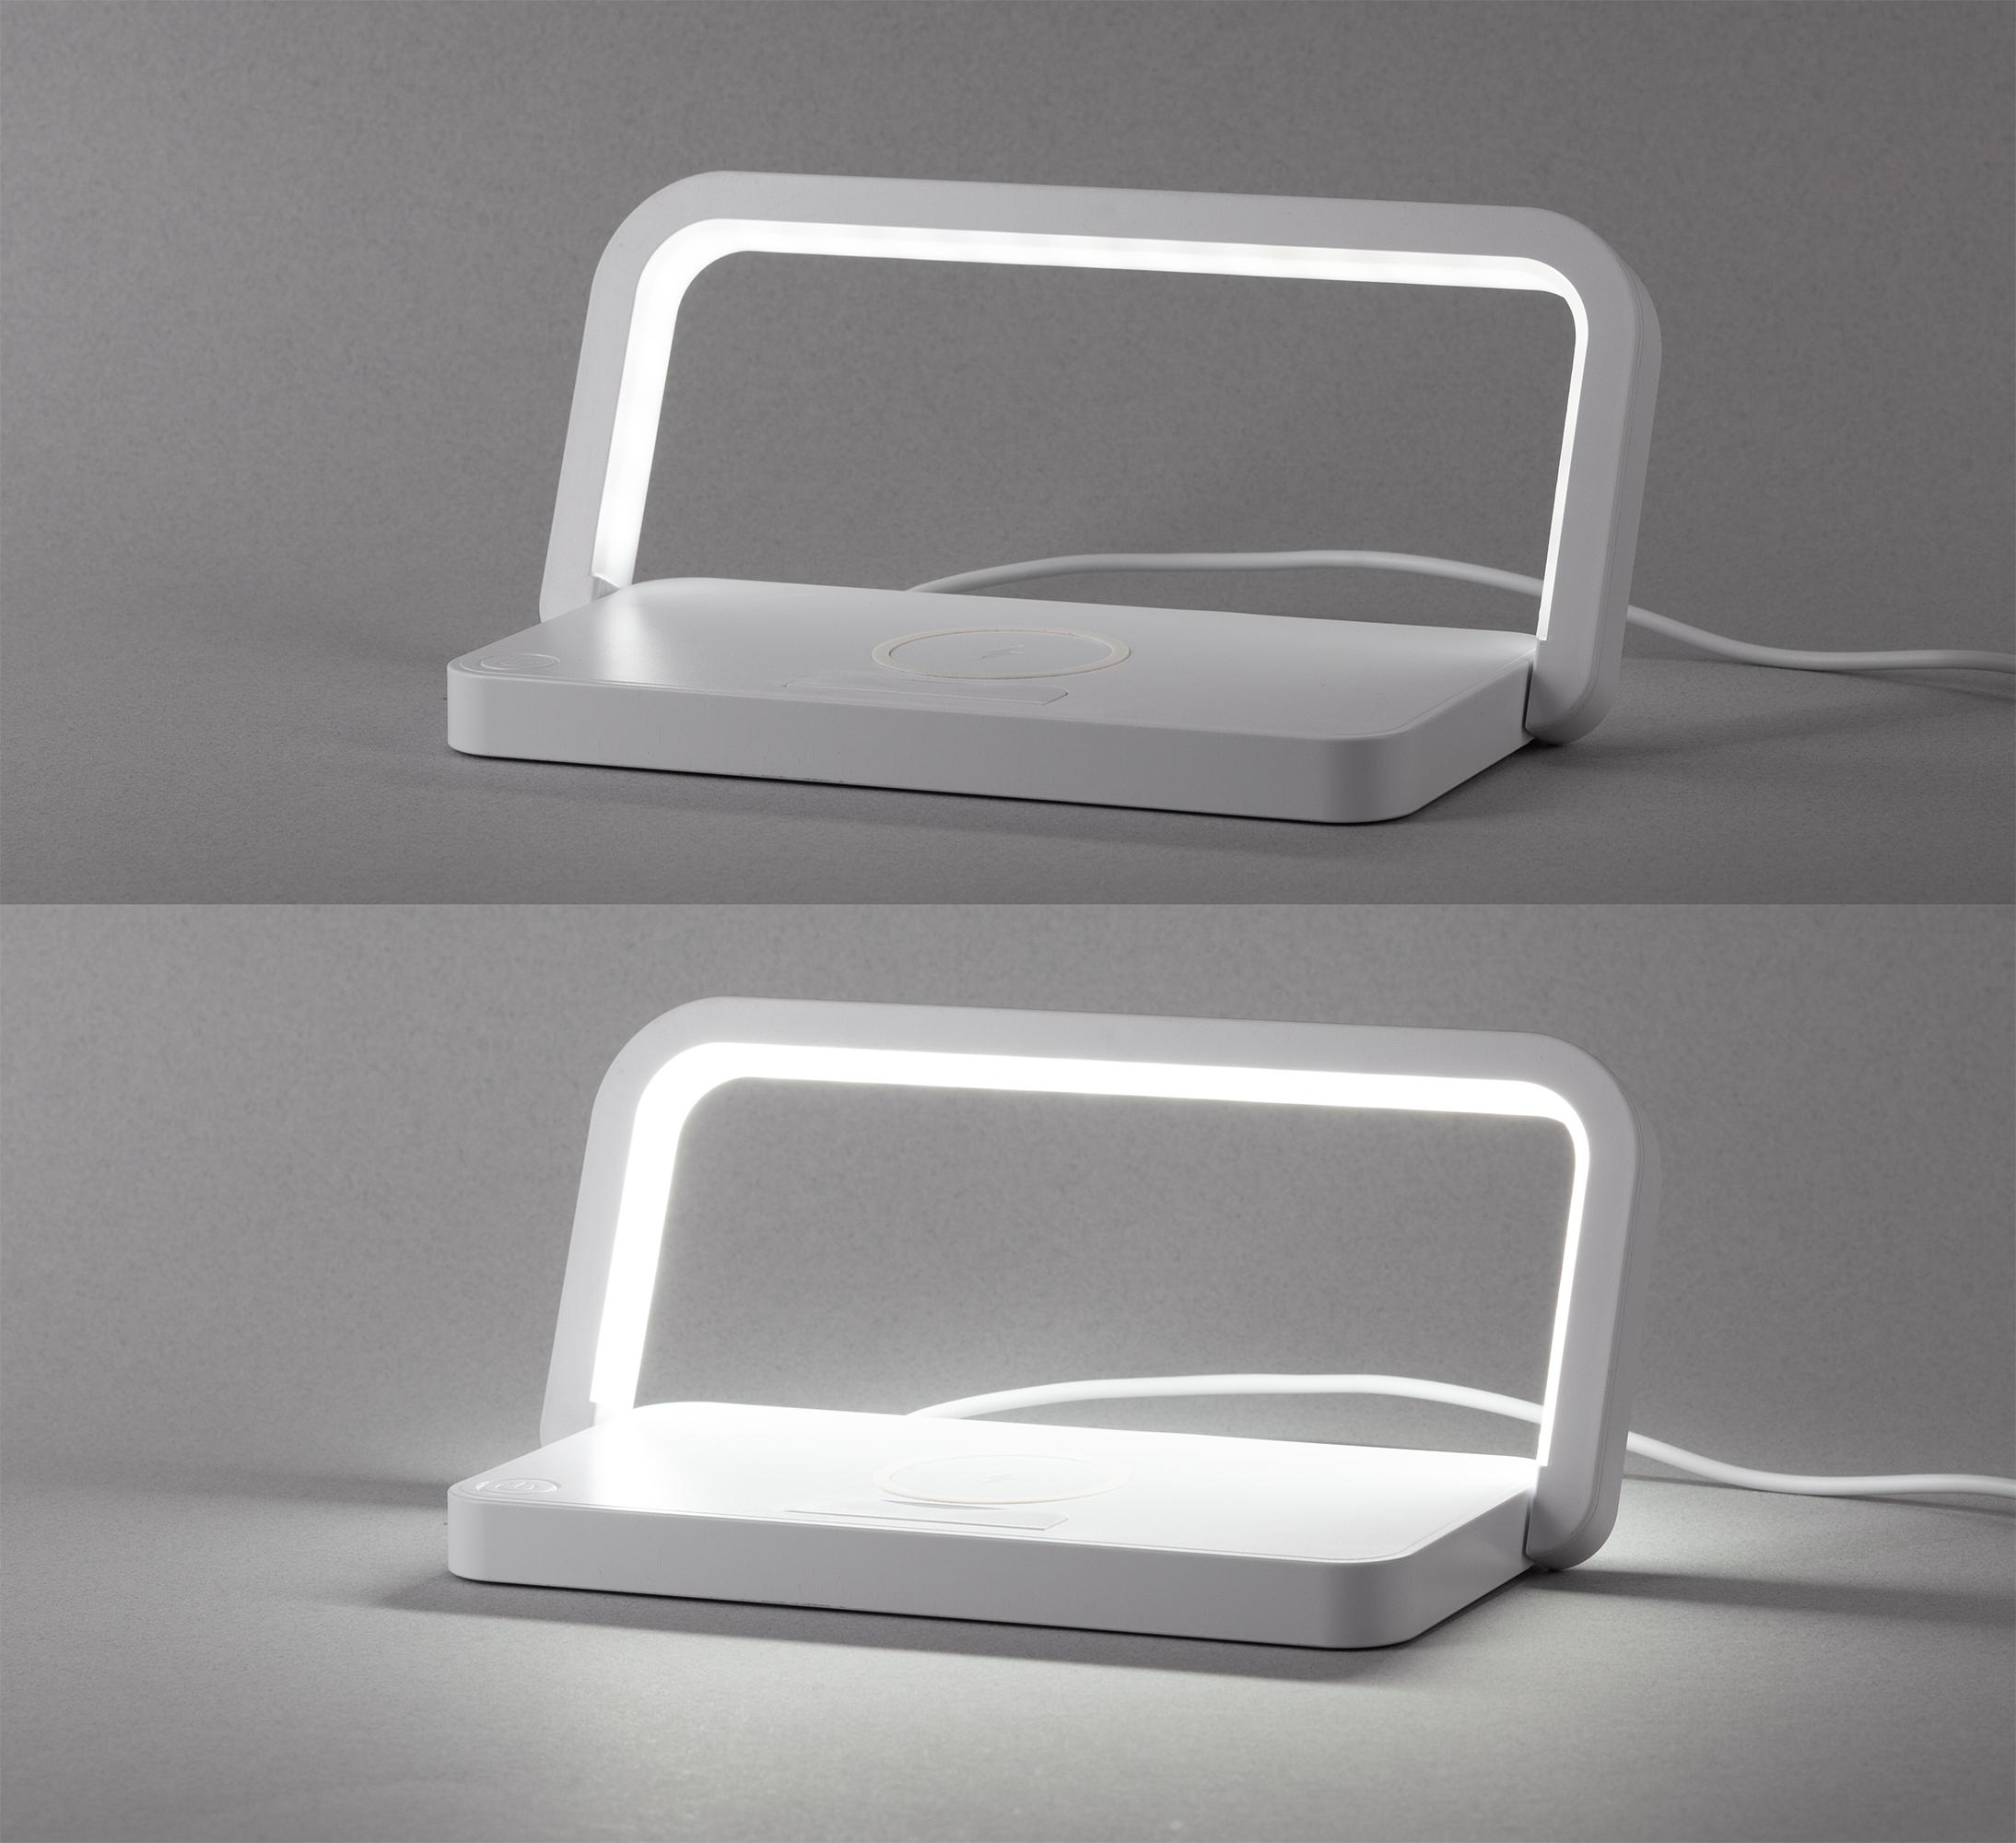 Лампа складная "Smart Light" с беспроводным (10W) зарядным устройством и подставкой для смартфона, цвет белый, фото 5